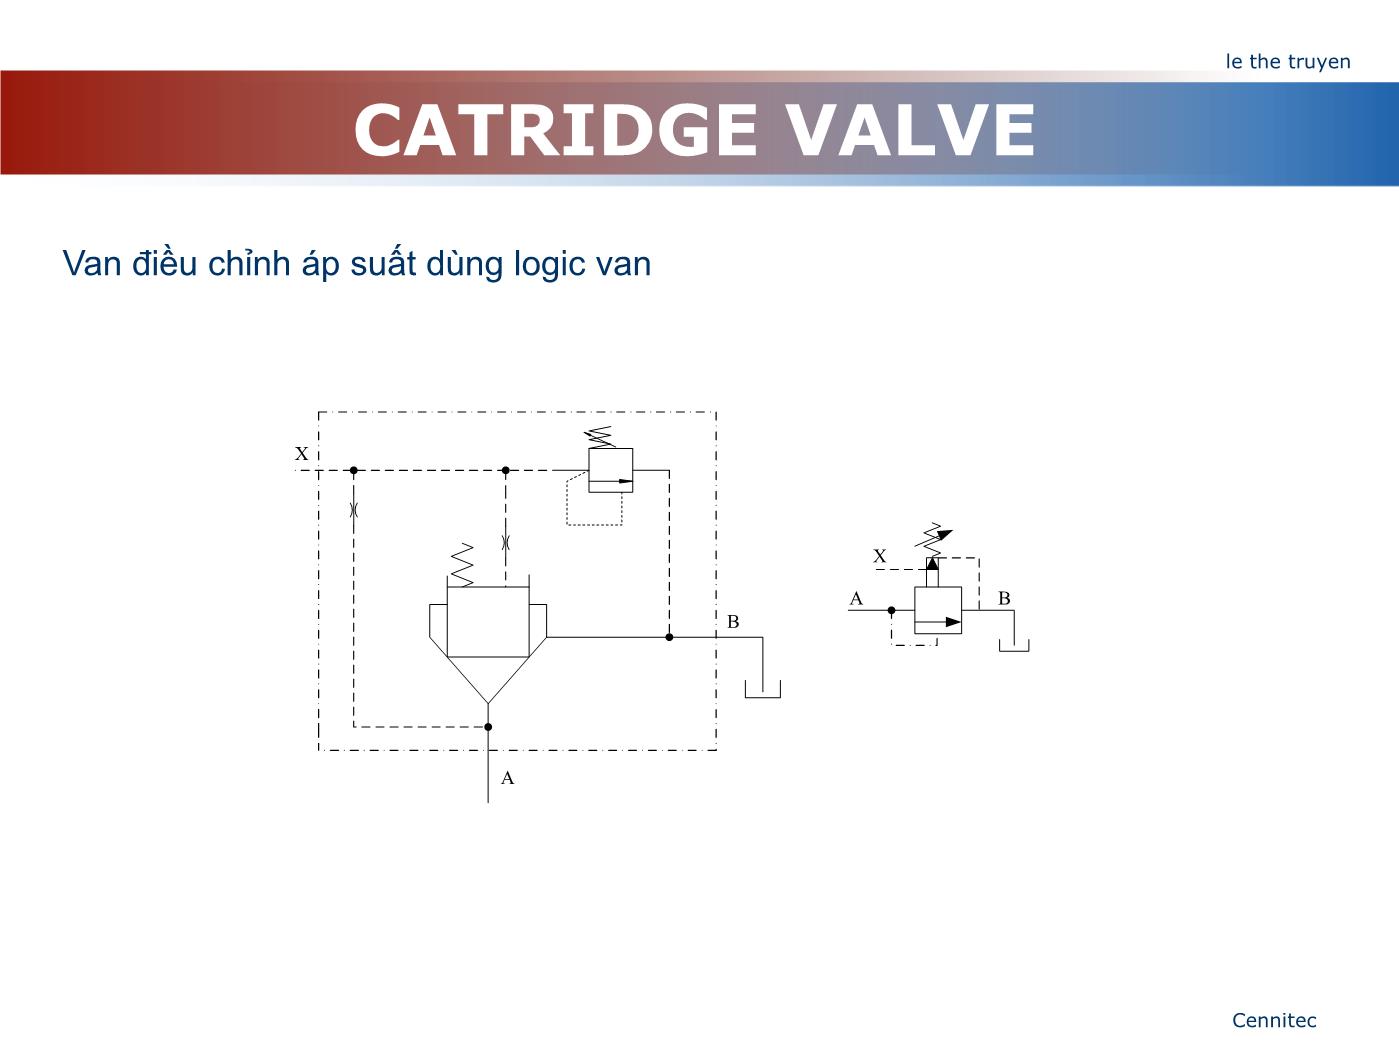 Bài giảng Truyển động thủy lực và khí - Chương 8: Catridge Valve - Lê Thế Truyền trang 6